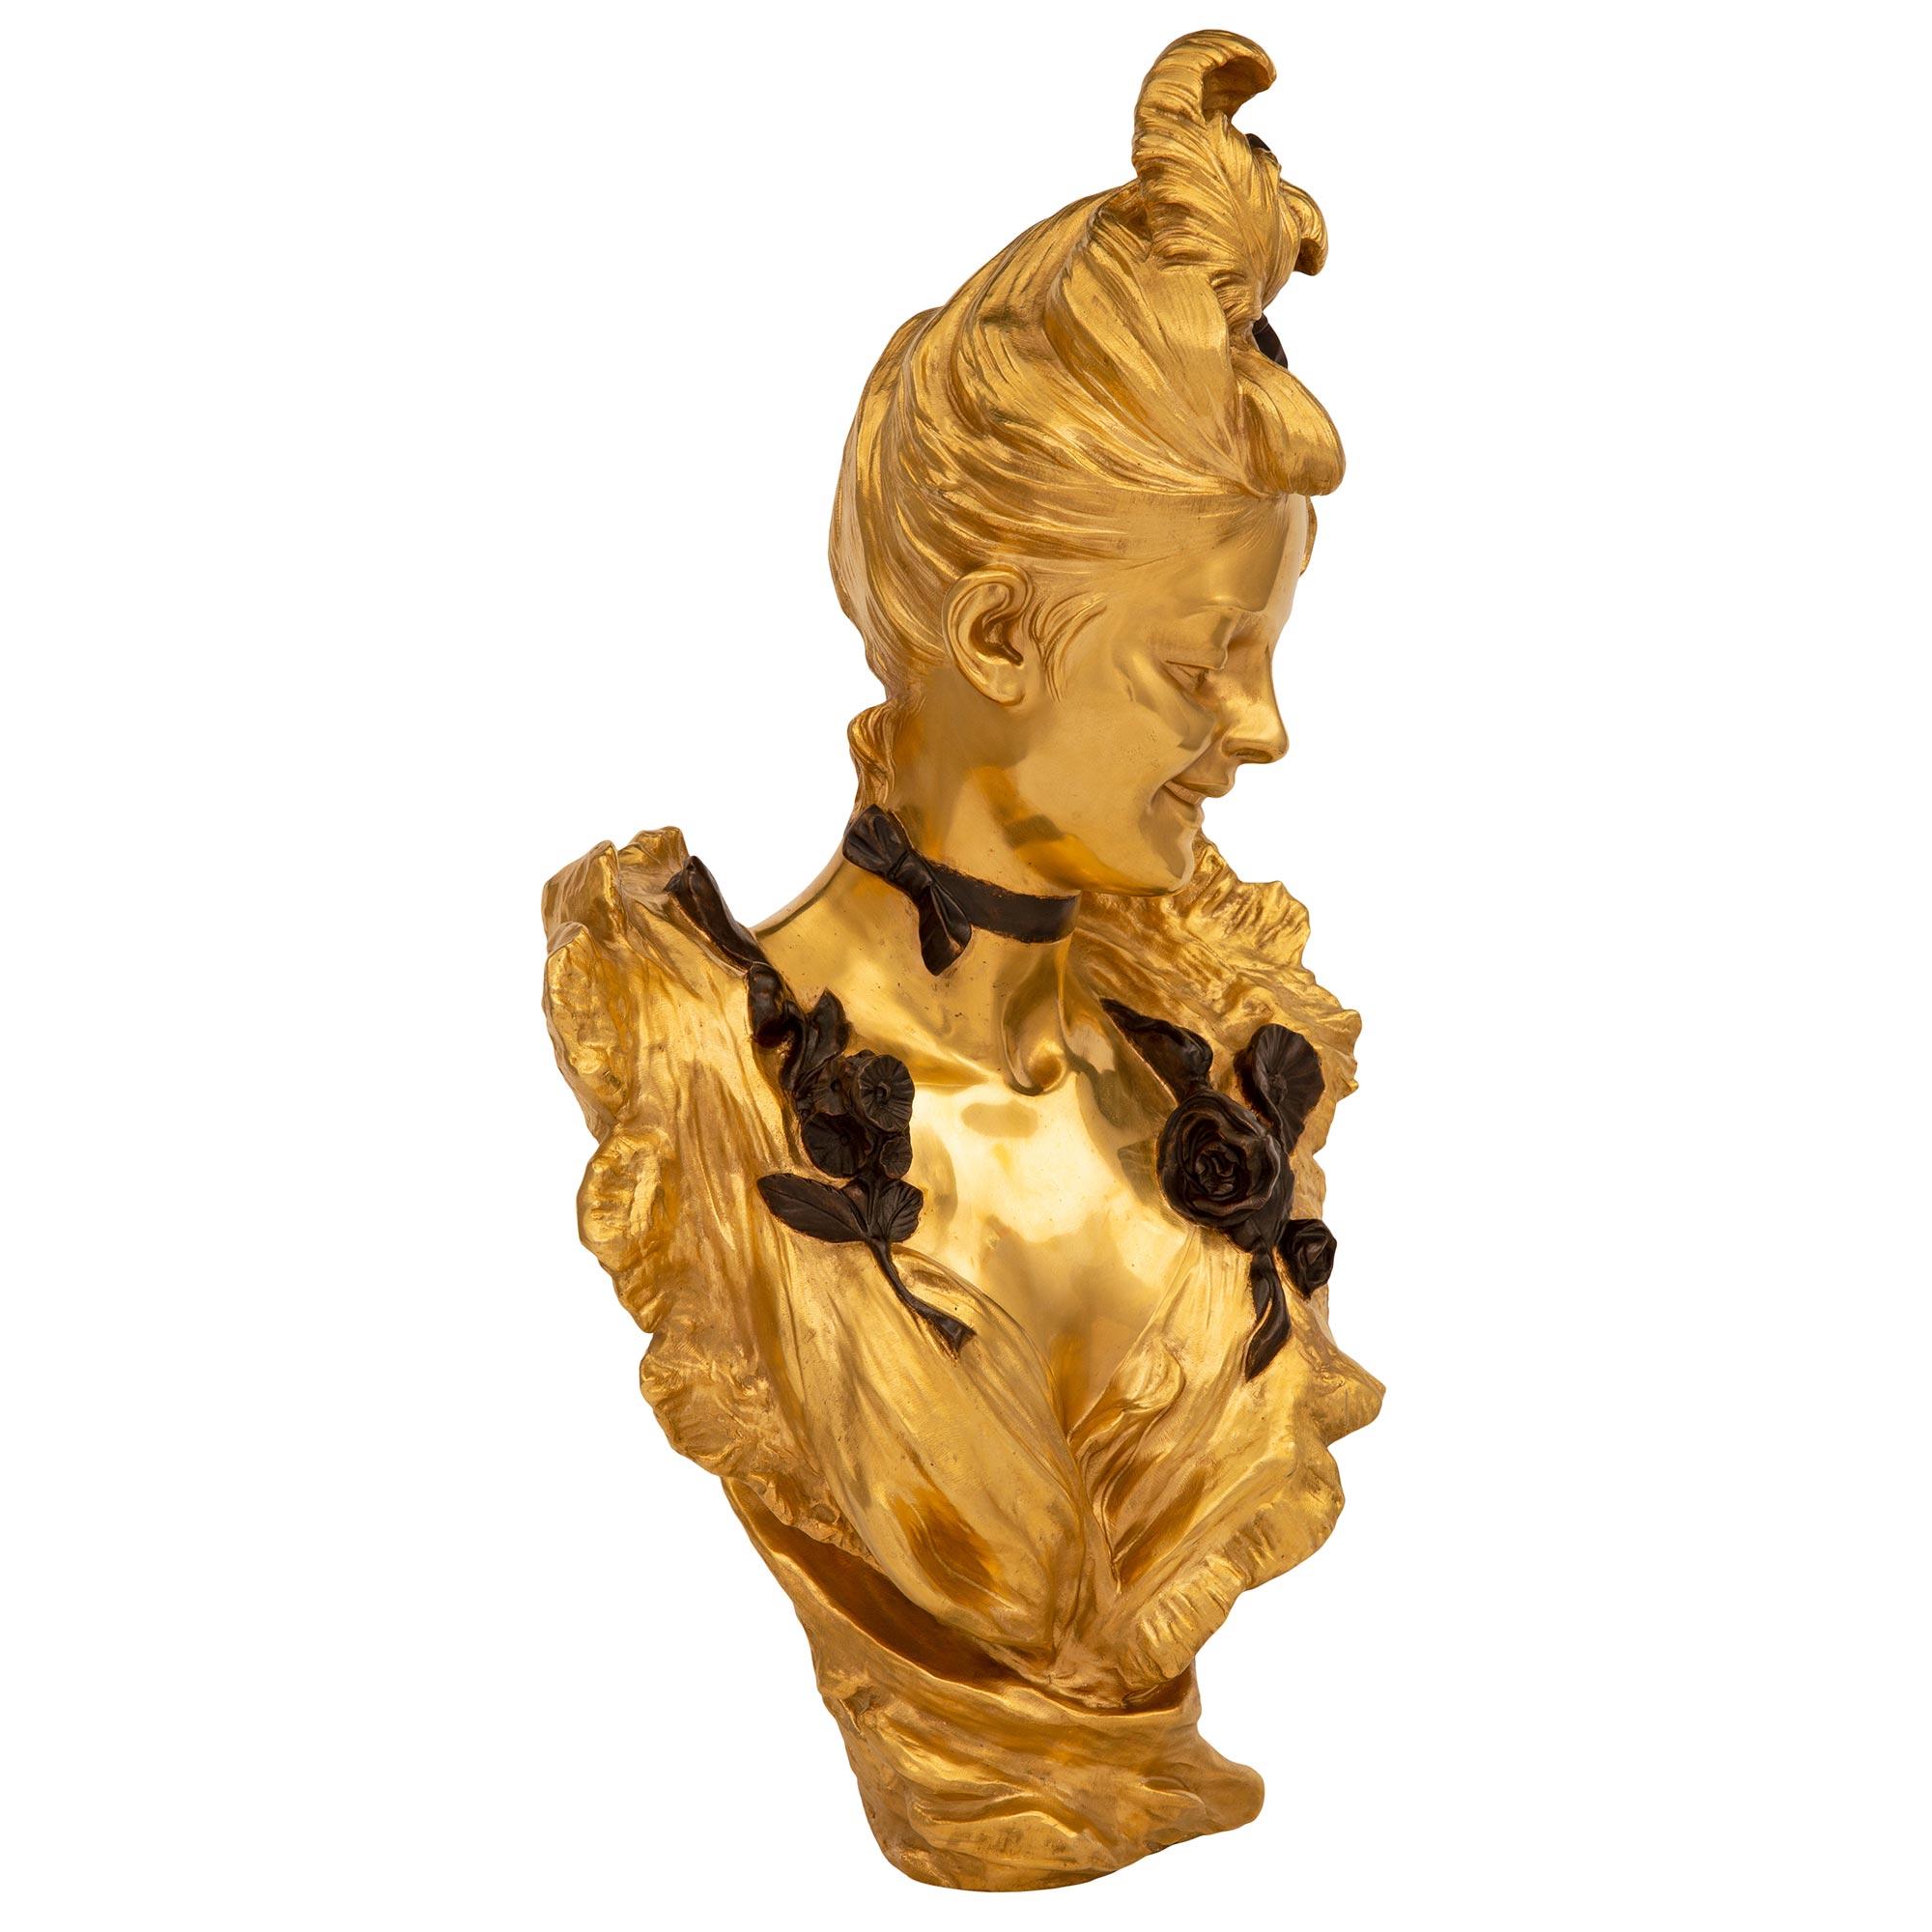 Exceptionnel et très élégant buste d'une belle jeune fille en bronze doré et patiné, d'époque Louis XVI et Belle Époque, signé V. Bruyneel. Le buste est surélevé par un vêtement fluide merveilleusement exécuté qui remonte autour des épaules de la